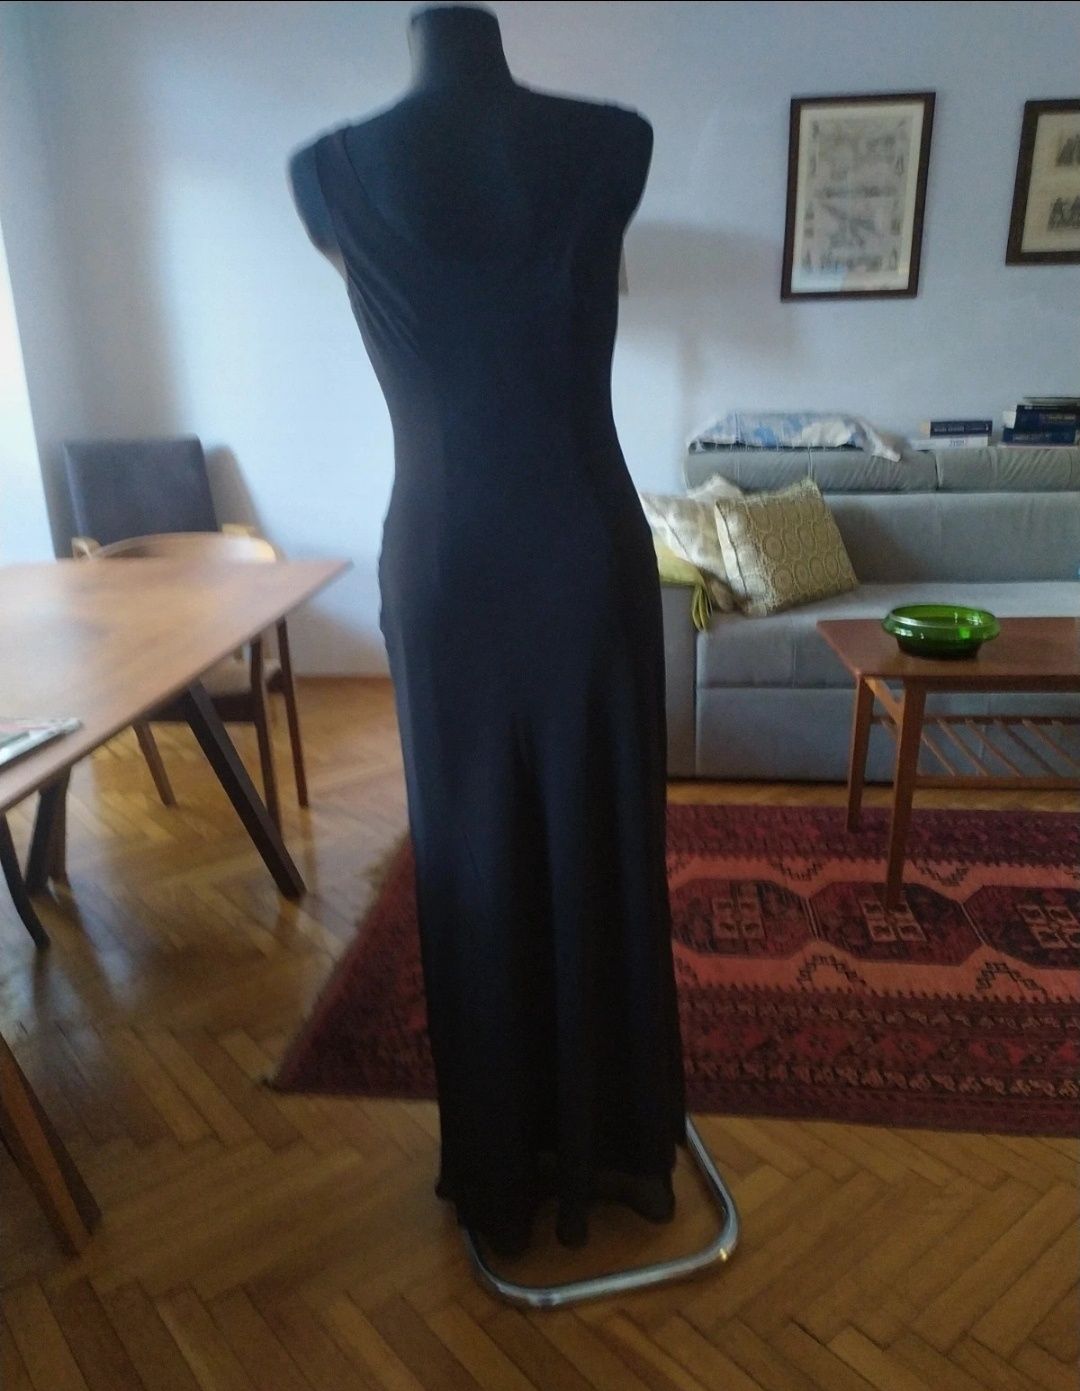 Wallis nowa długa czarna sukienka elegancka bal wesele. Rozmiar M -L.